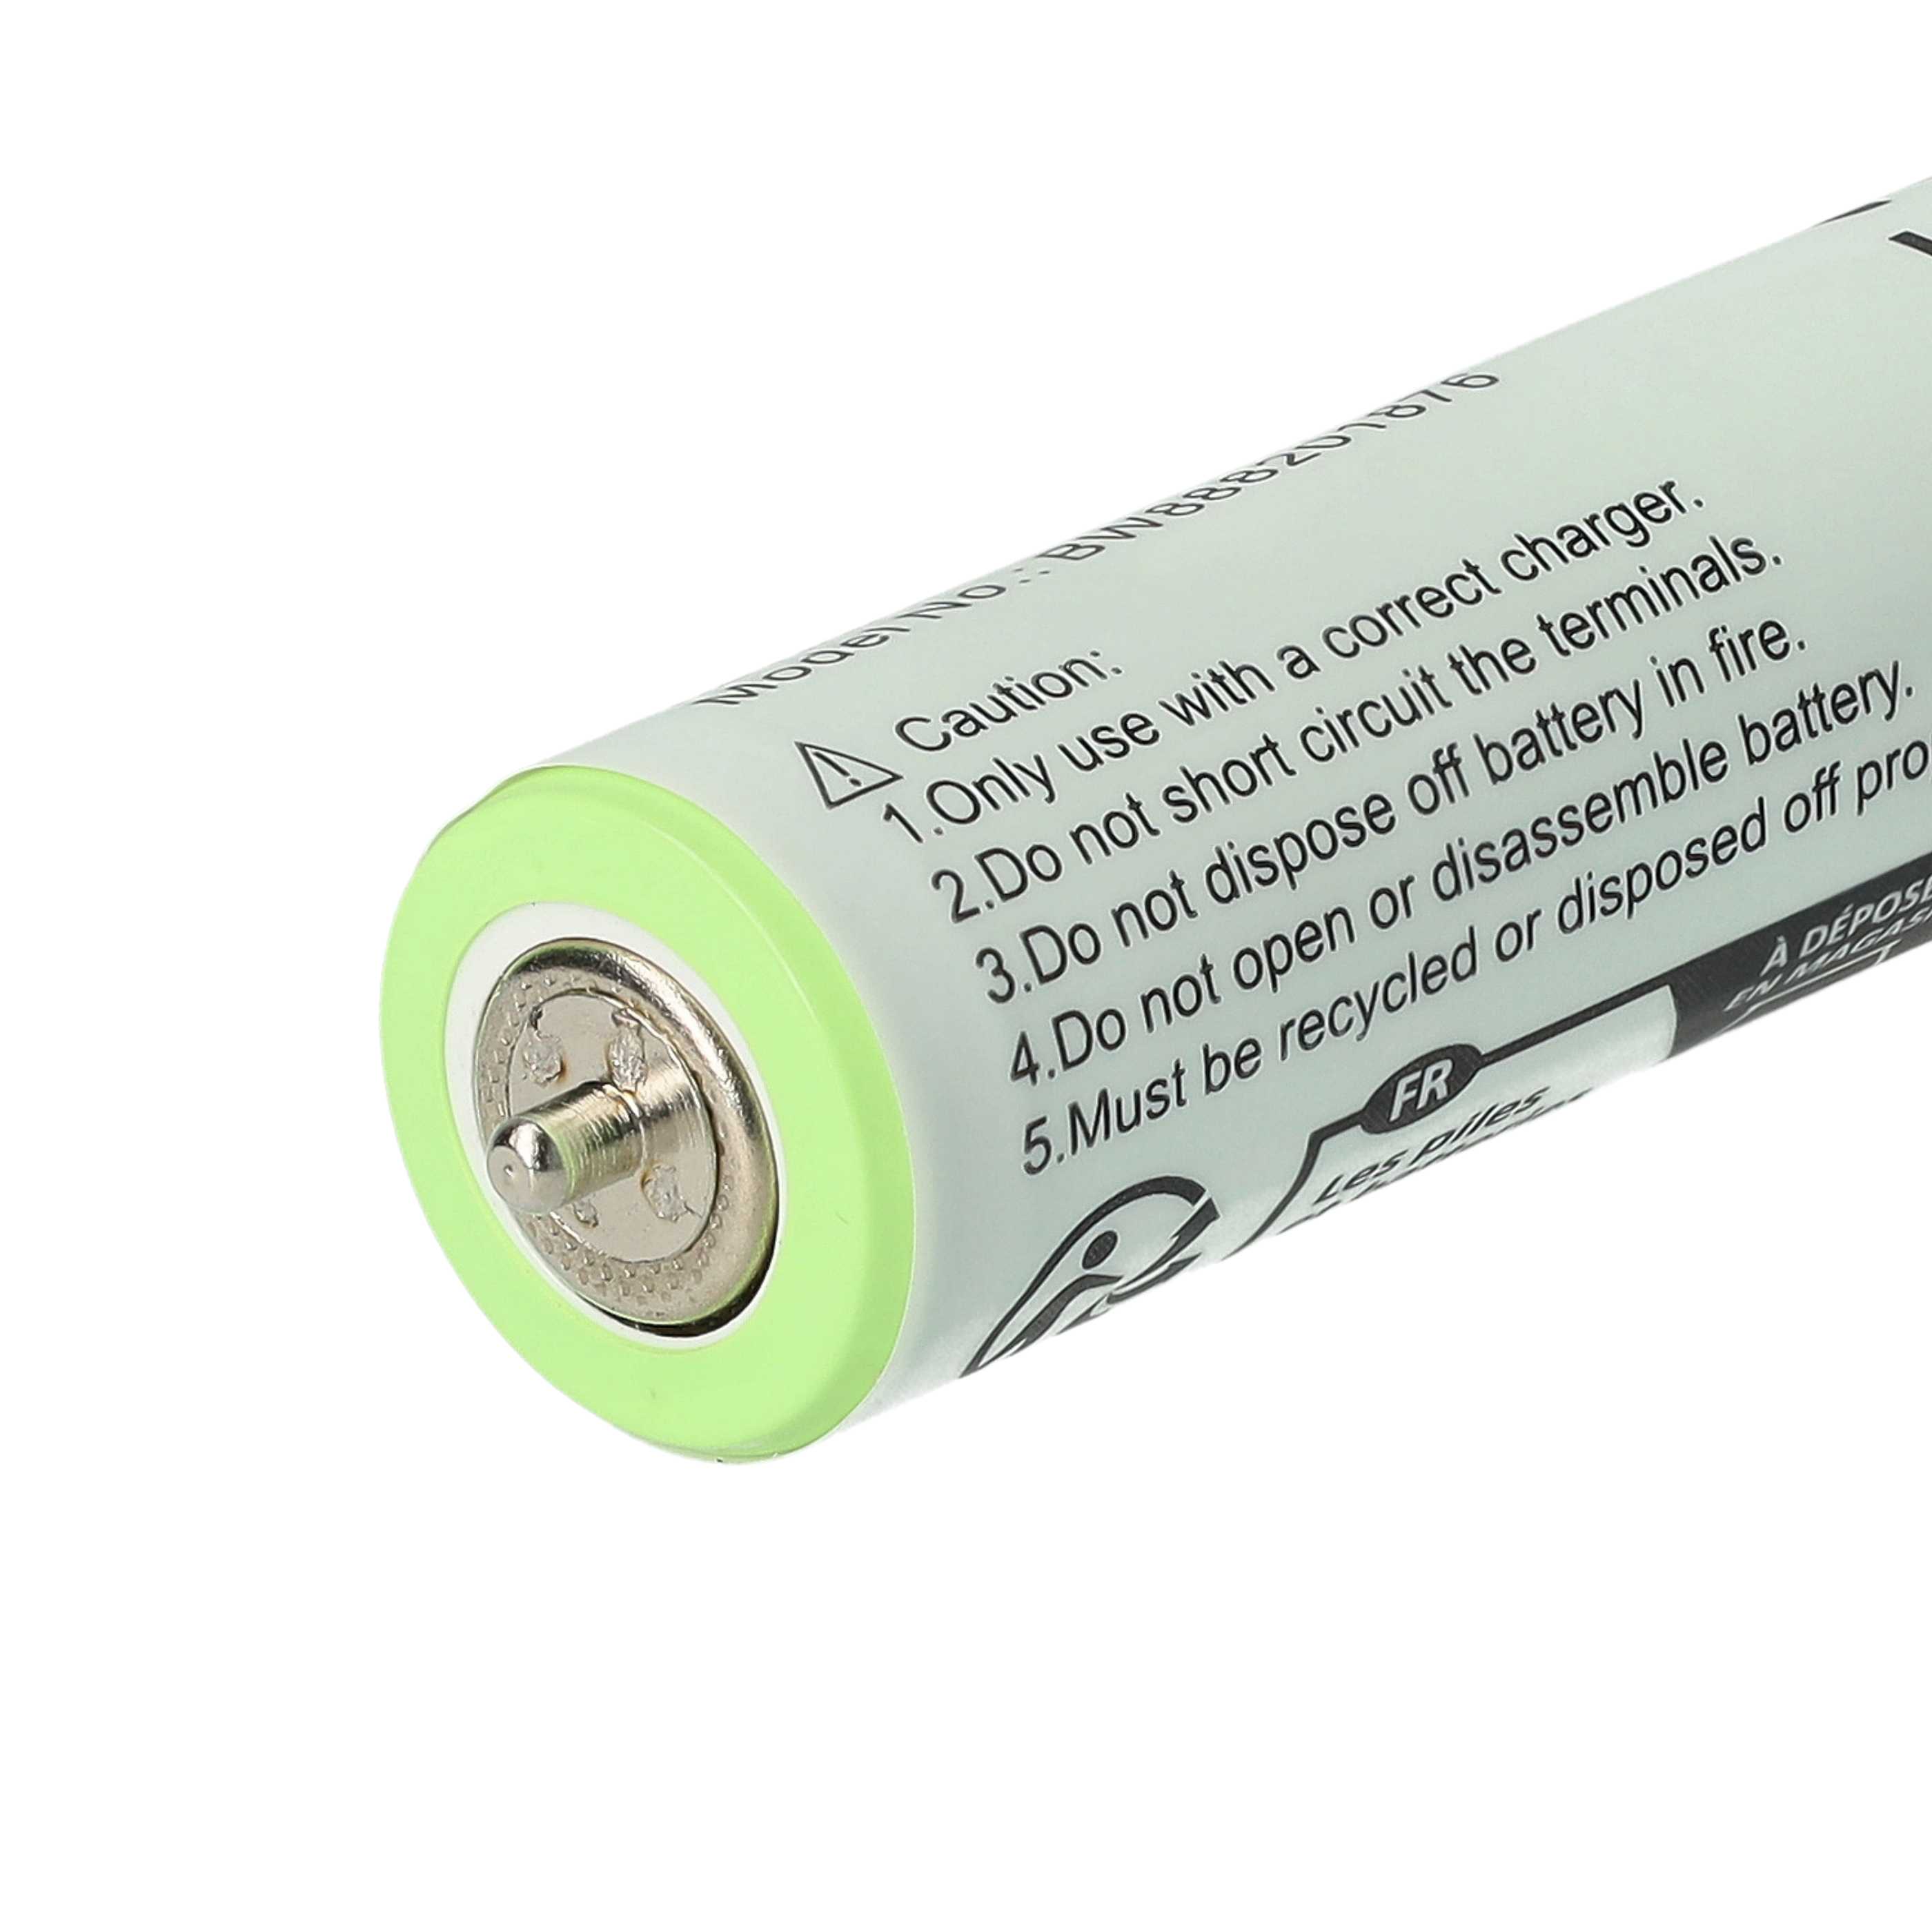 Batteries (2x pièces) remplace Braun 1HR-AAAUV, 67030834, 67030165 pour rasoir électrique - 1800mAh 1,2V NiMH